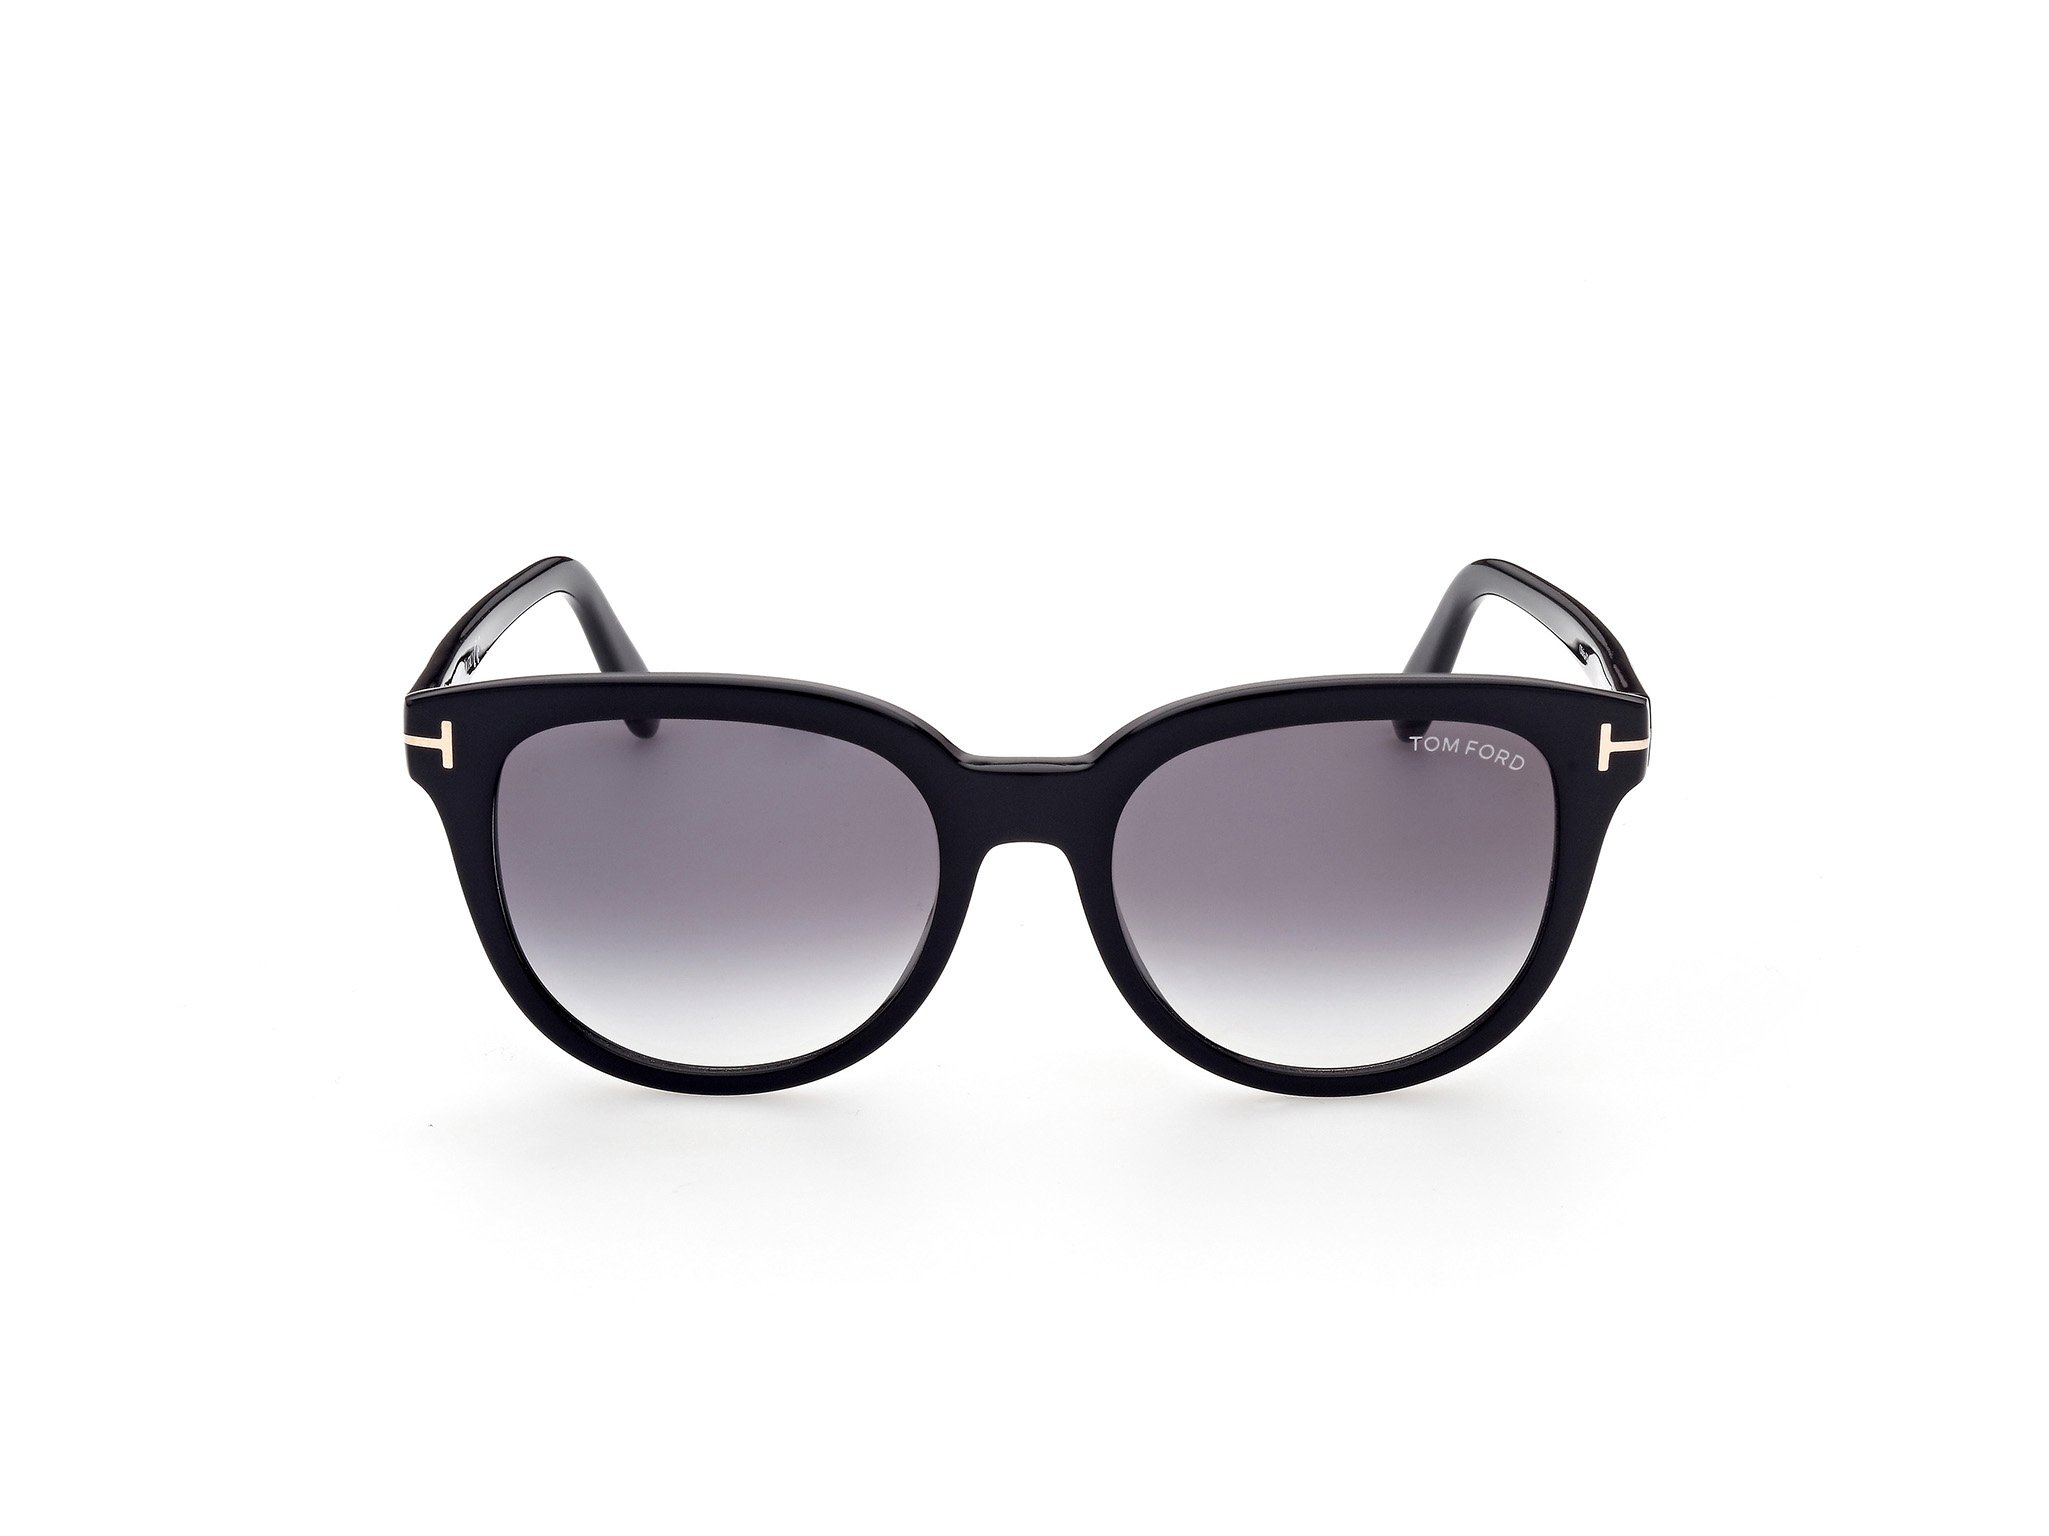 Das Bild zeigt die Sonnenbrille Olivia FT0914 von der Marke Tom Ford in schwarz frontal